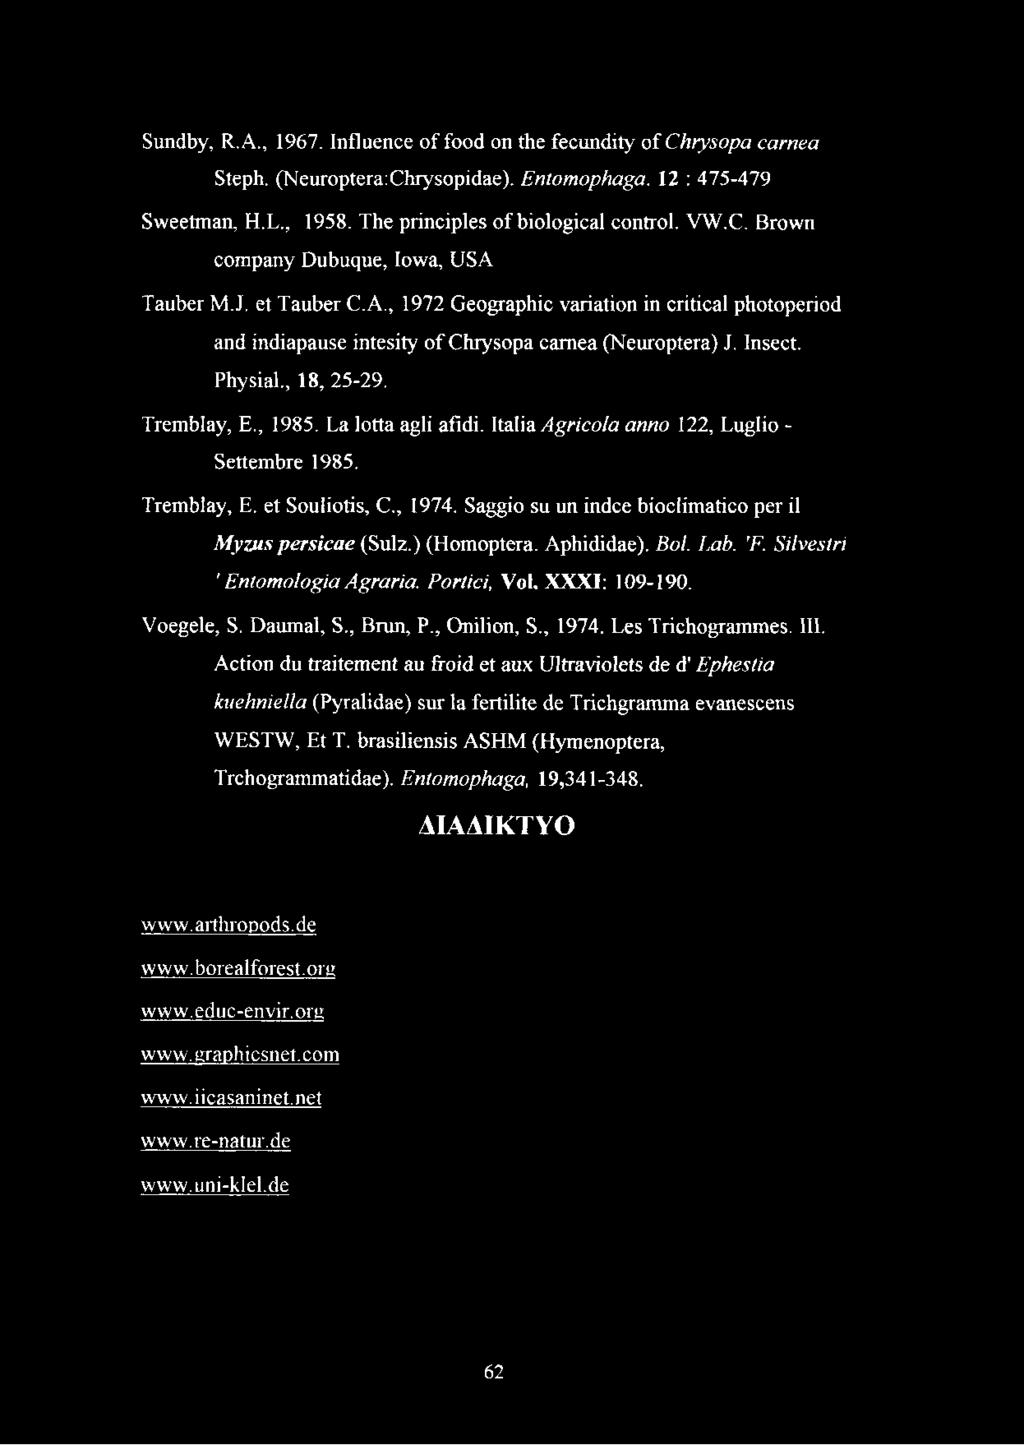 Italia Agrícola anno 122, Luglio - Settembre 1985. Tremblay, E. et Souliotis, C., 1974. Saggio su un indce bioclimatico per il Myzus persicae (Sulz.) (Homoptera. Aphididae). Bol. Lab. 'F.